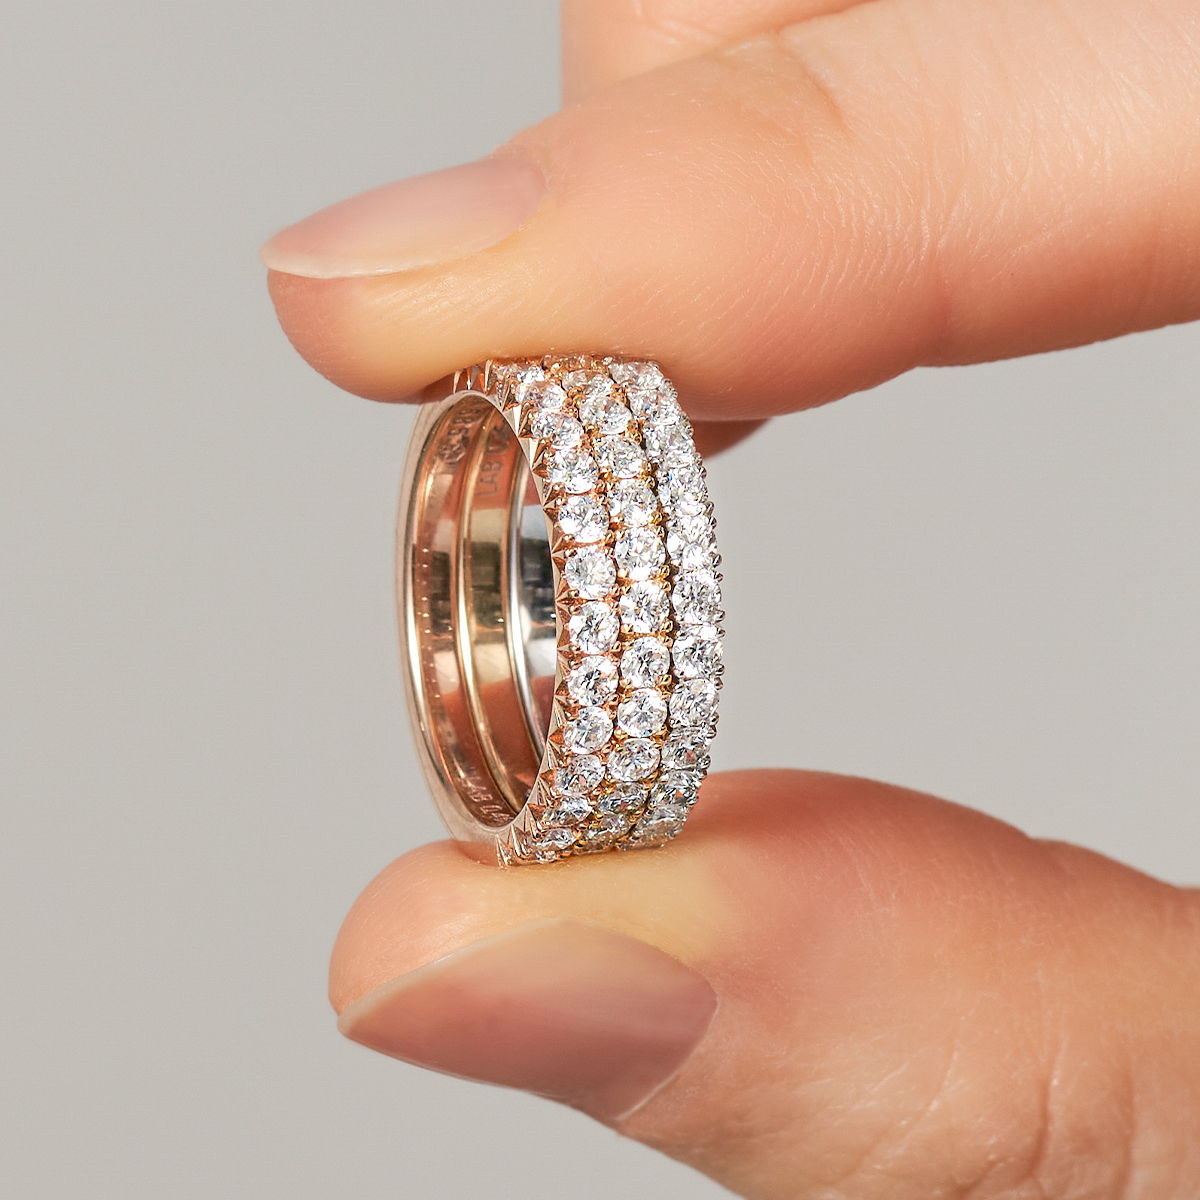 랩다이아몬드 삼색 하프 이터너티 피쉬테일 반지(2.0mm) 트리플 링